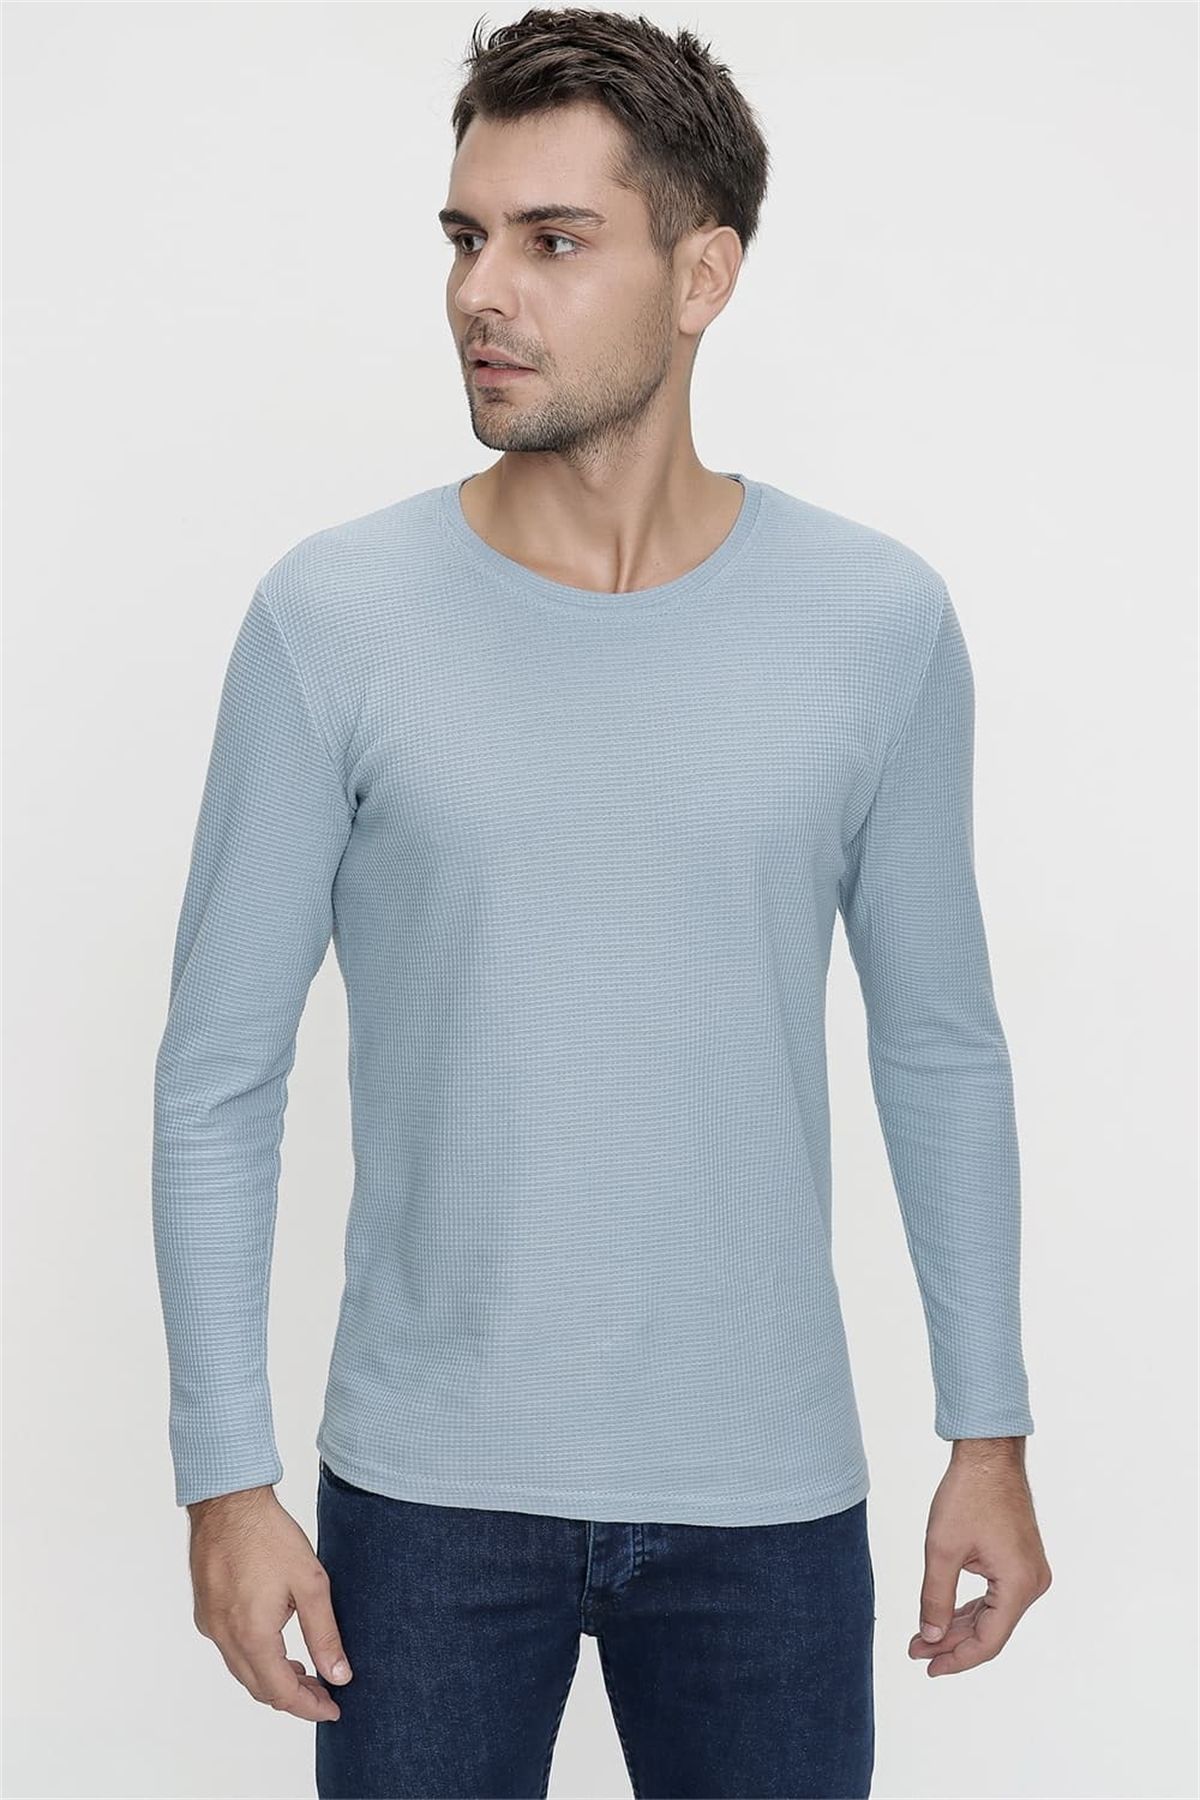 Efor Ts 818 Mavi Spor T-shirt